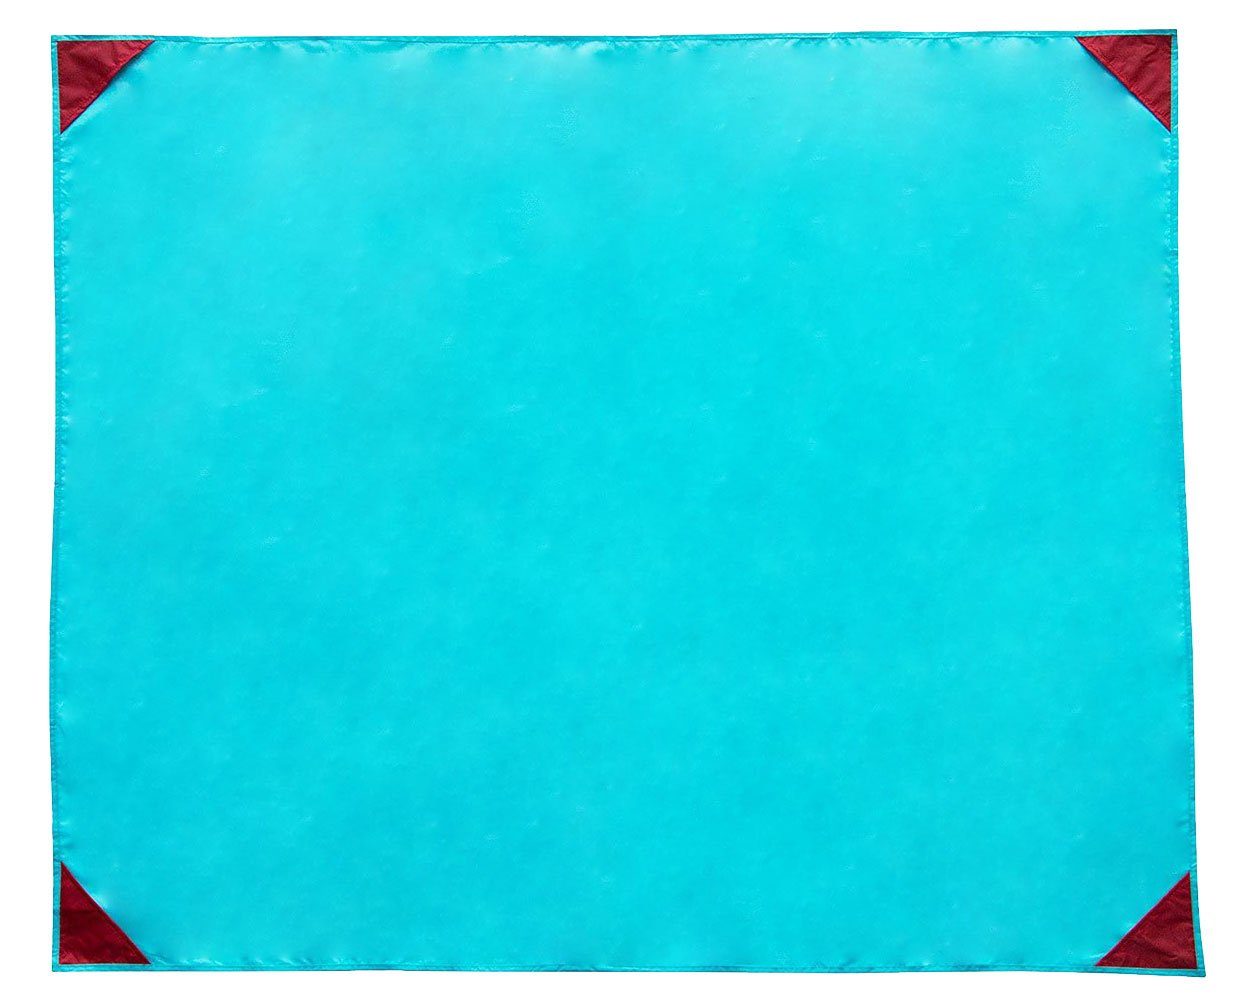 Picknickdecke, ZOLLNER, 135 x 165 cm, 100% Polyester, wasserabweisend, praktische Tragetasche türkis